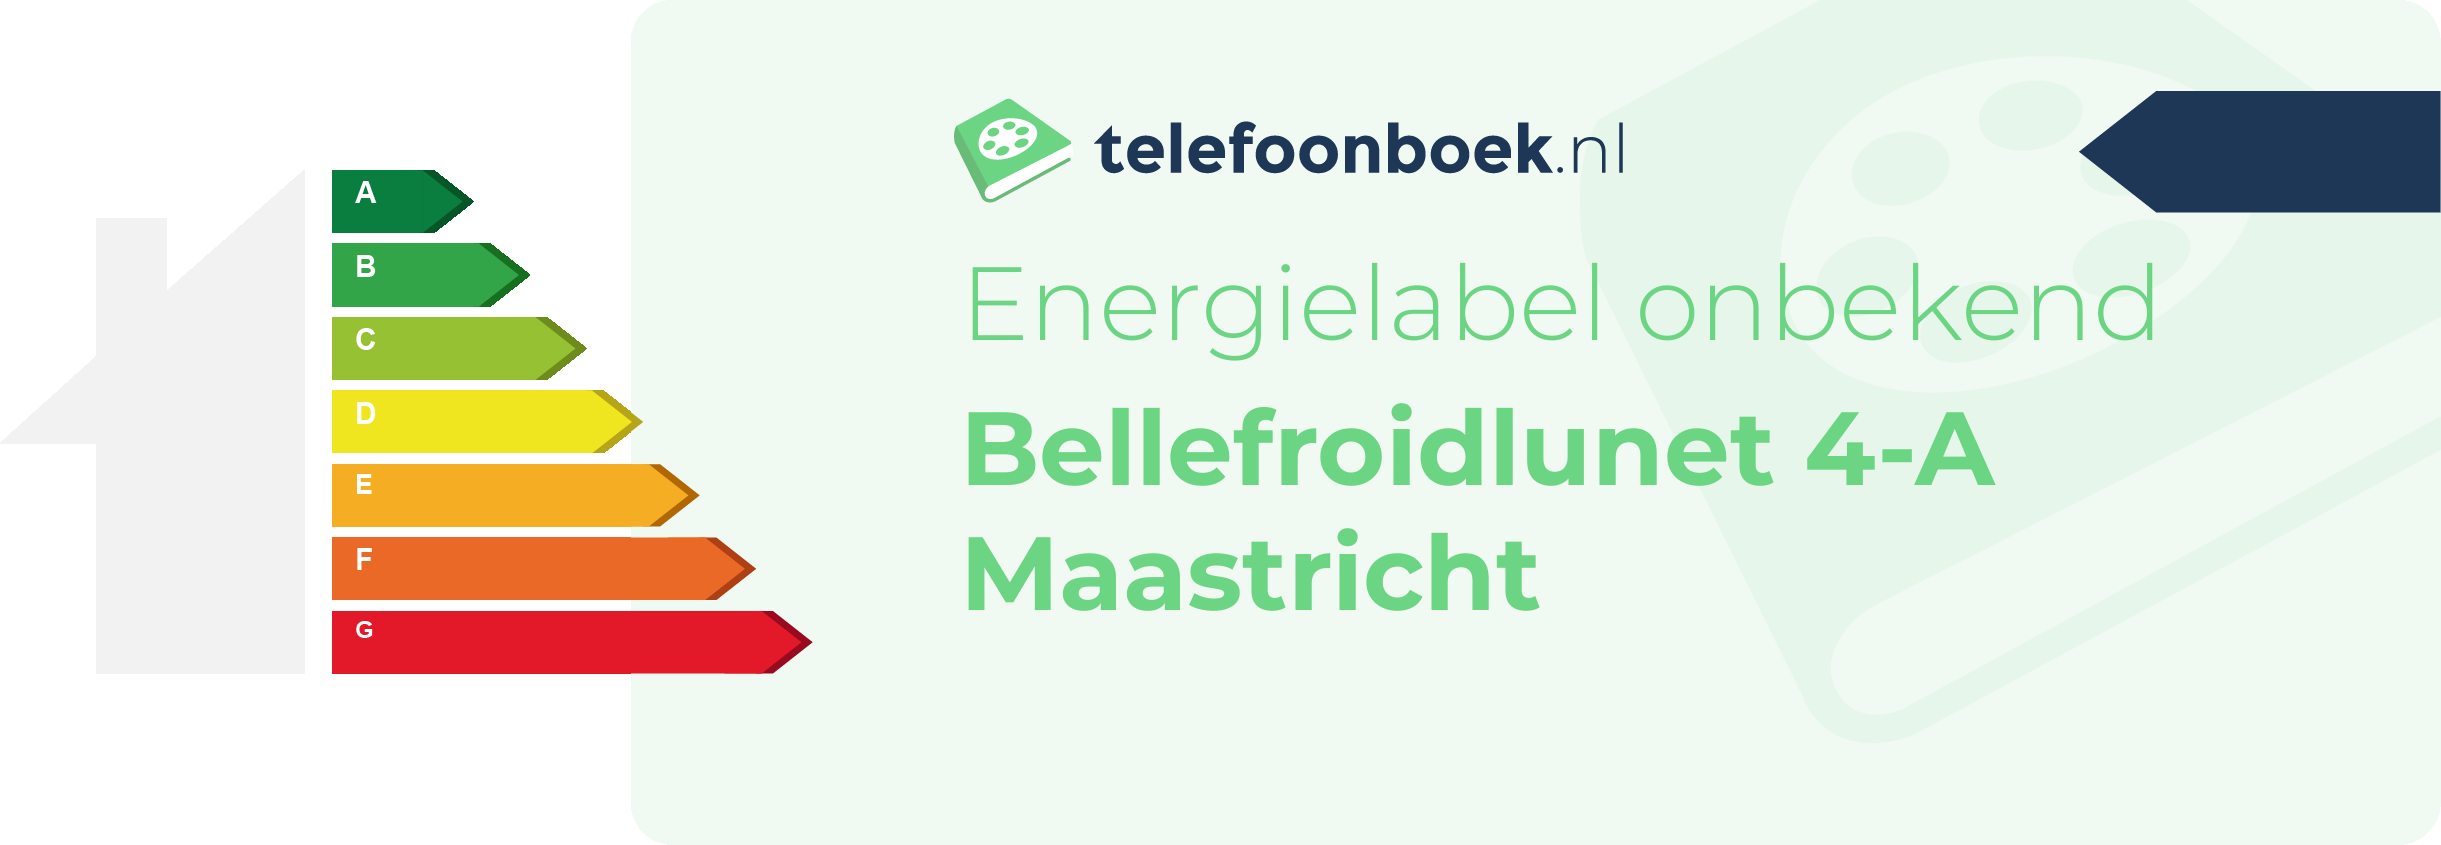 Energielabel Bellefroidlunet 4-A Maastricht